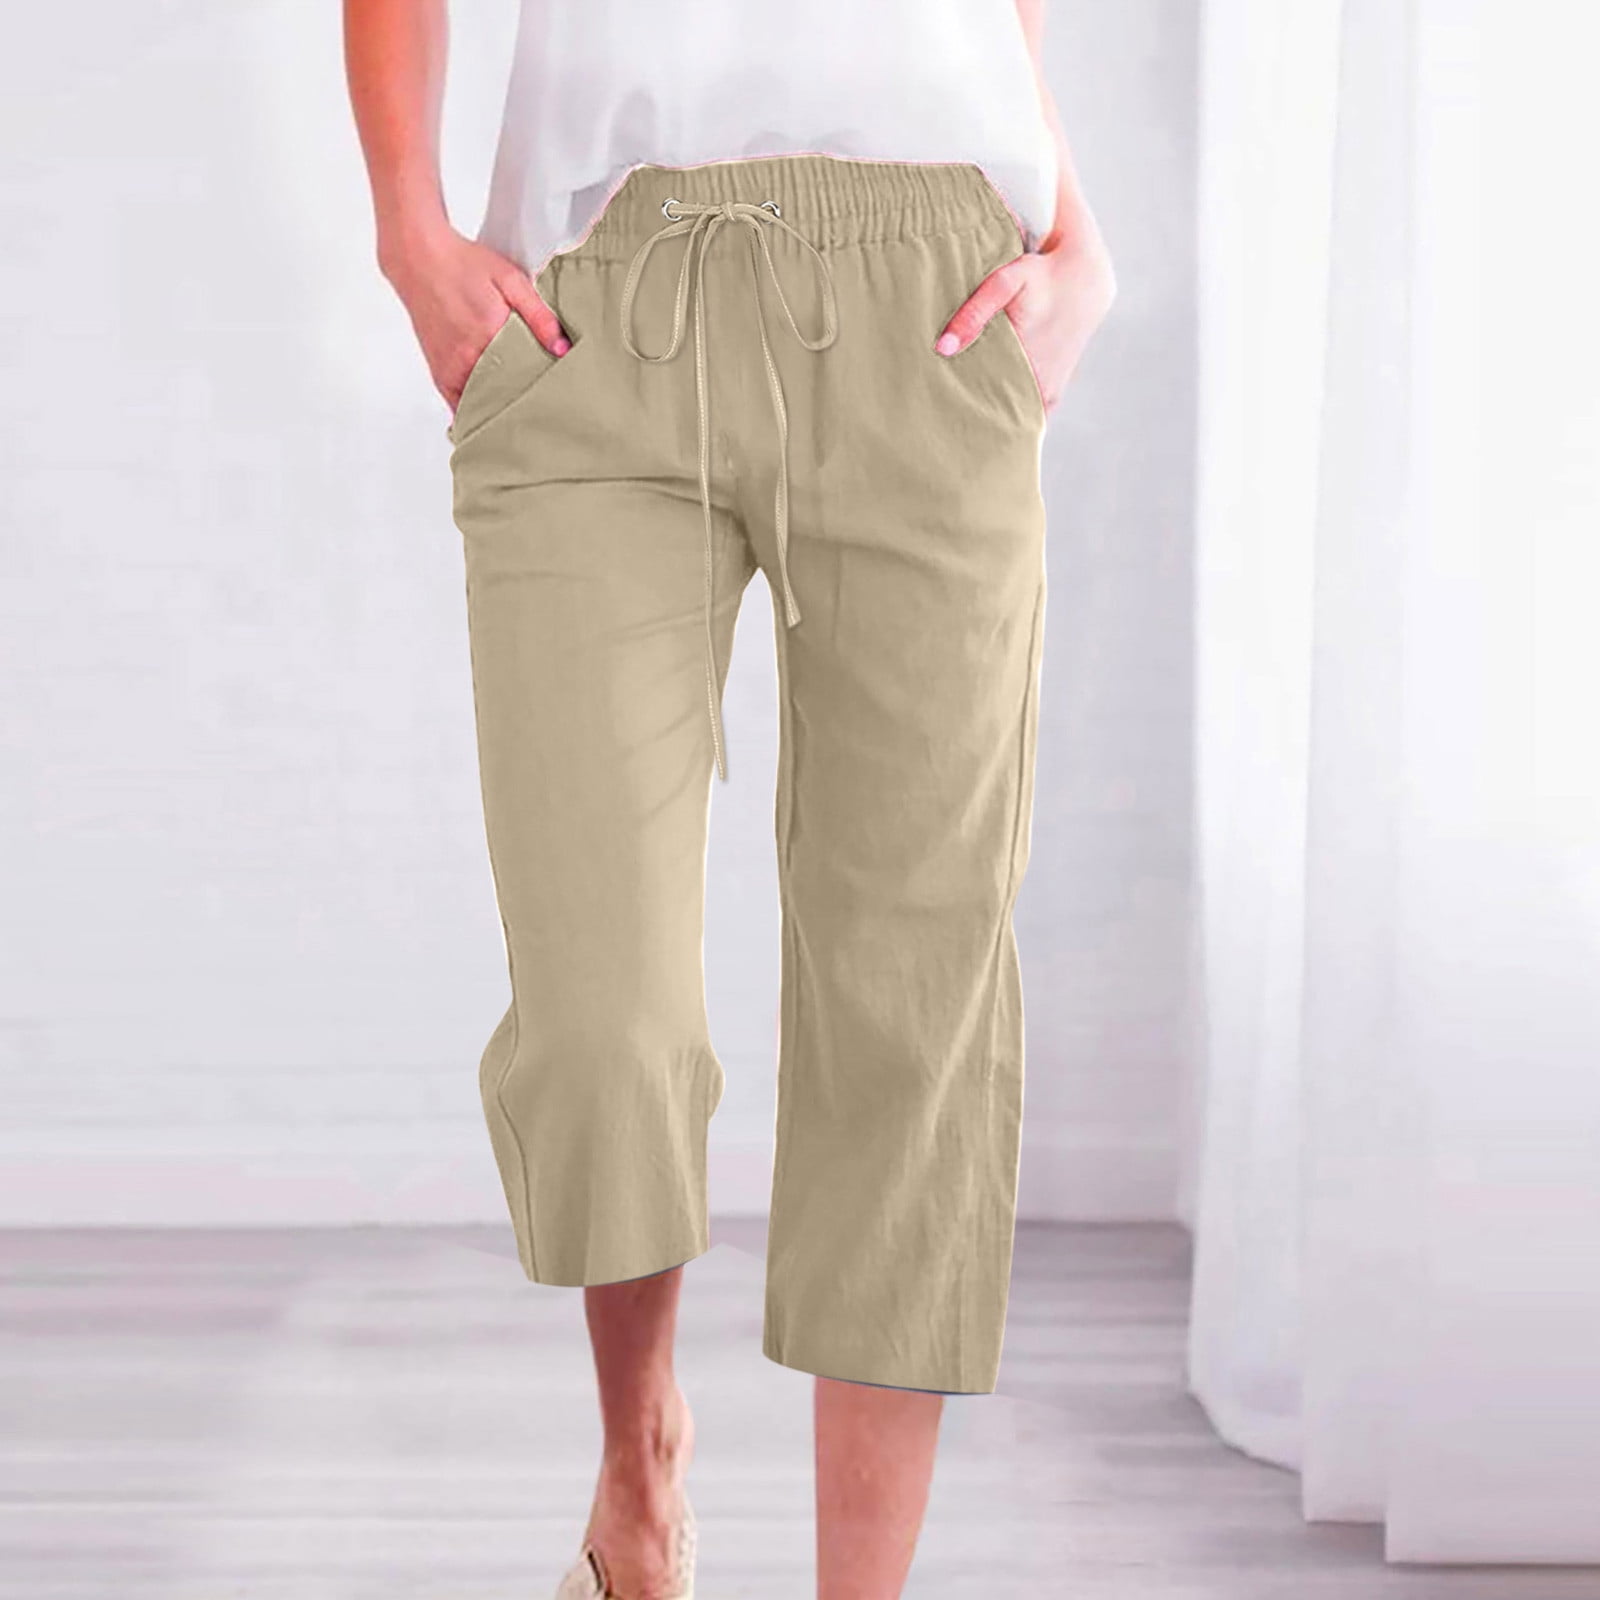 Hvyesh Plus Size Cotton Linen Capris Women Summer High Waist Loose Fit  Flowy Drawstring Casual Trousers Lightweight Beach Pants 